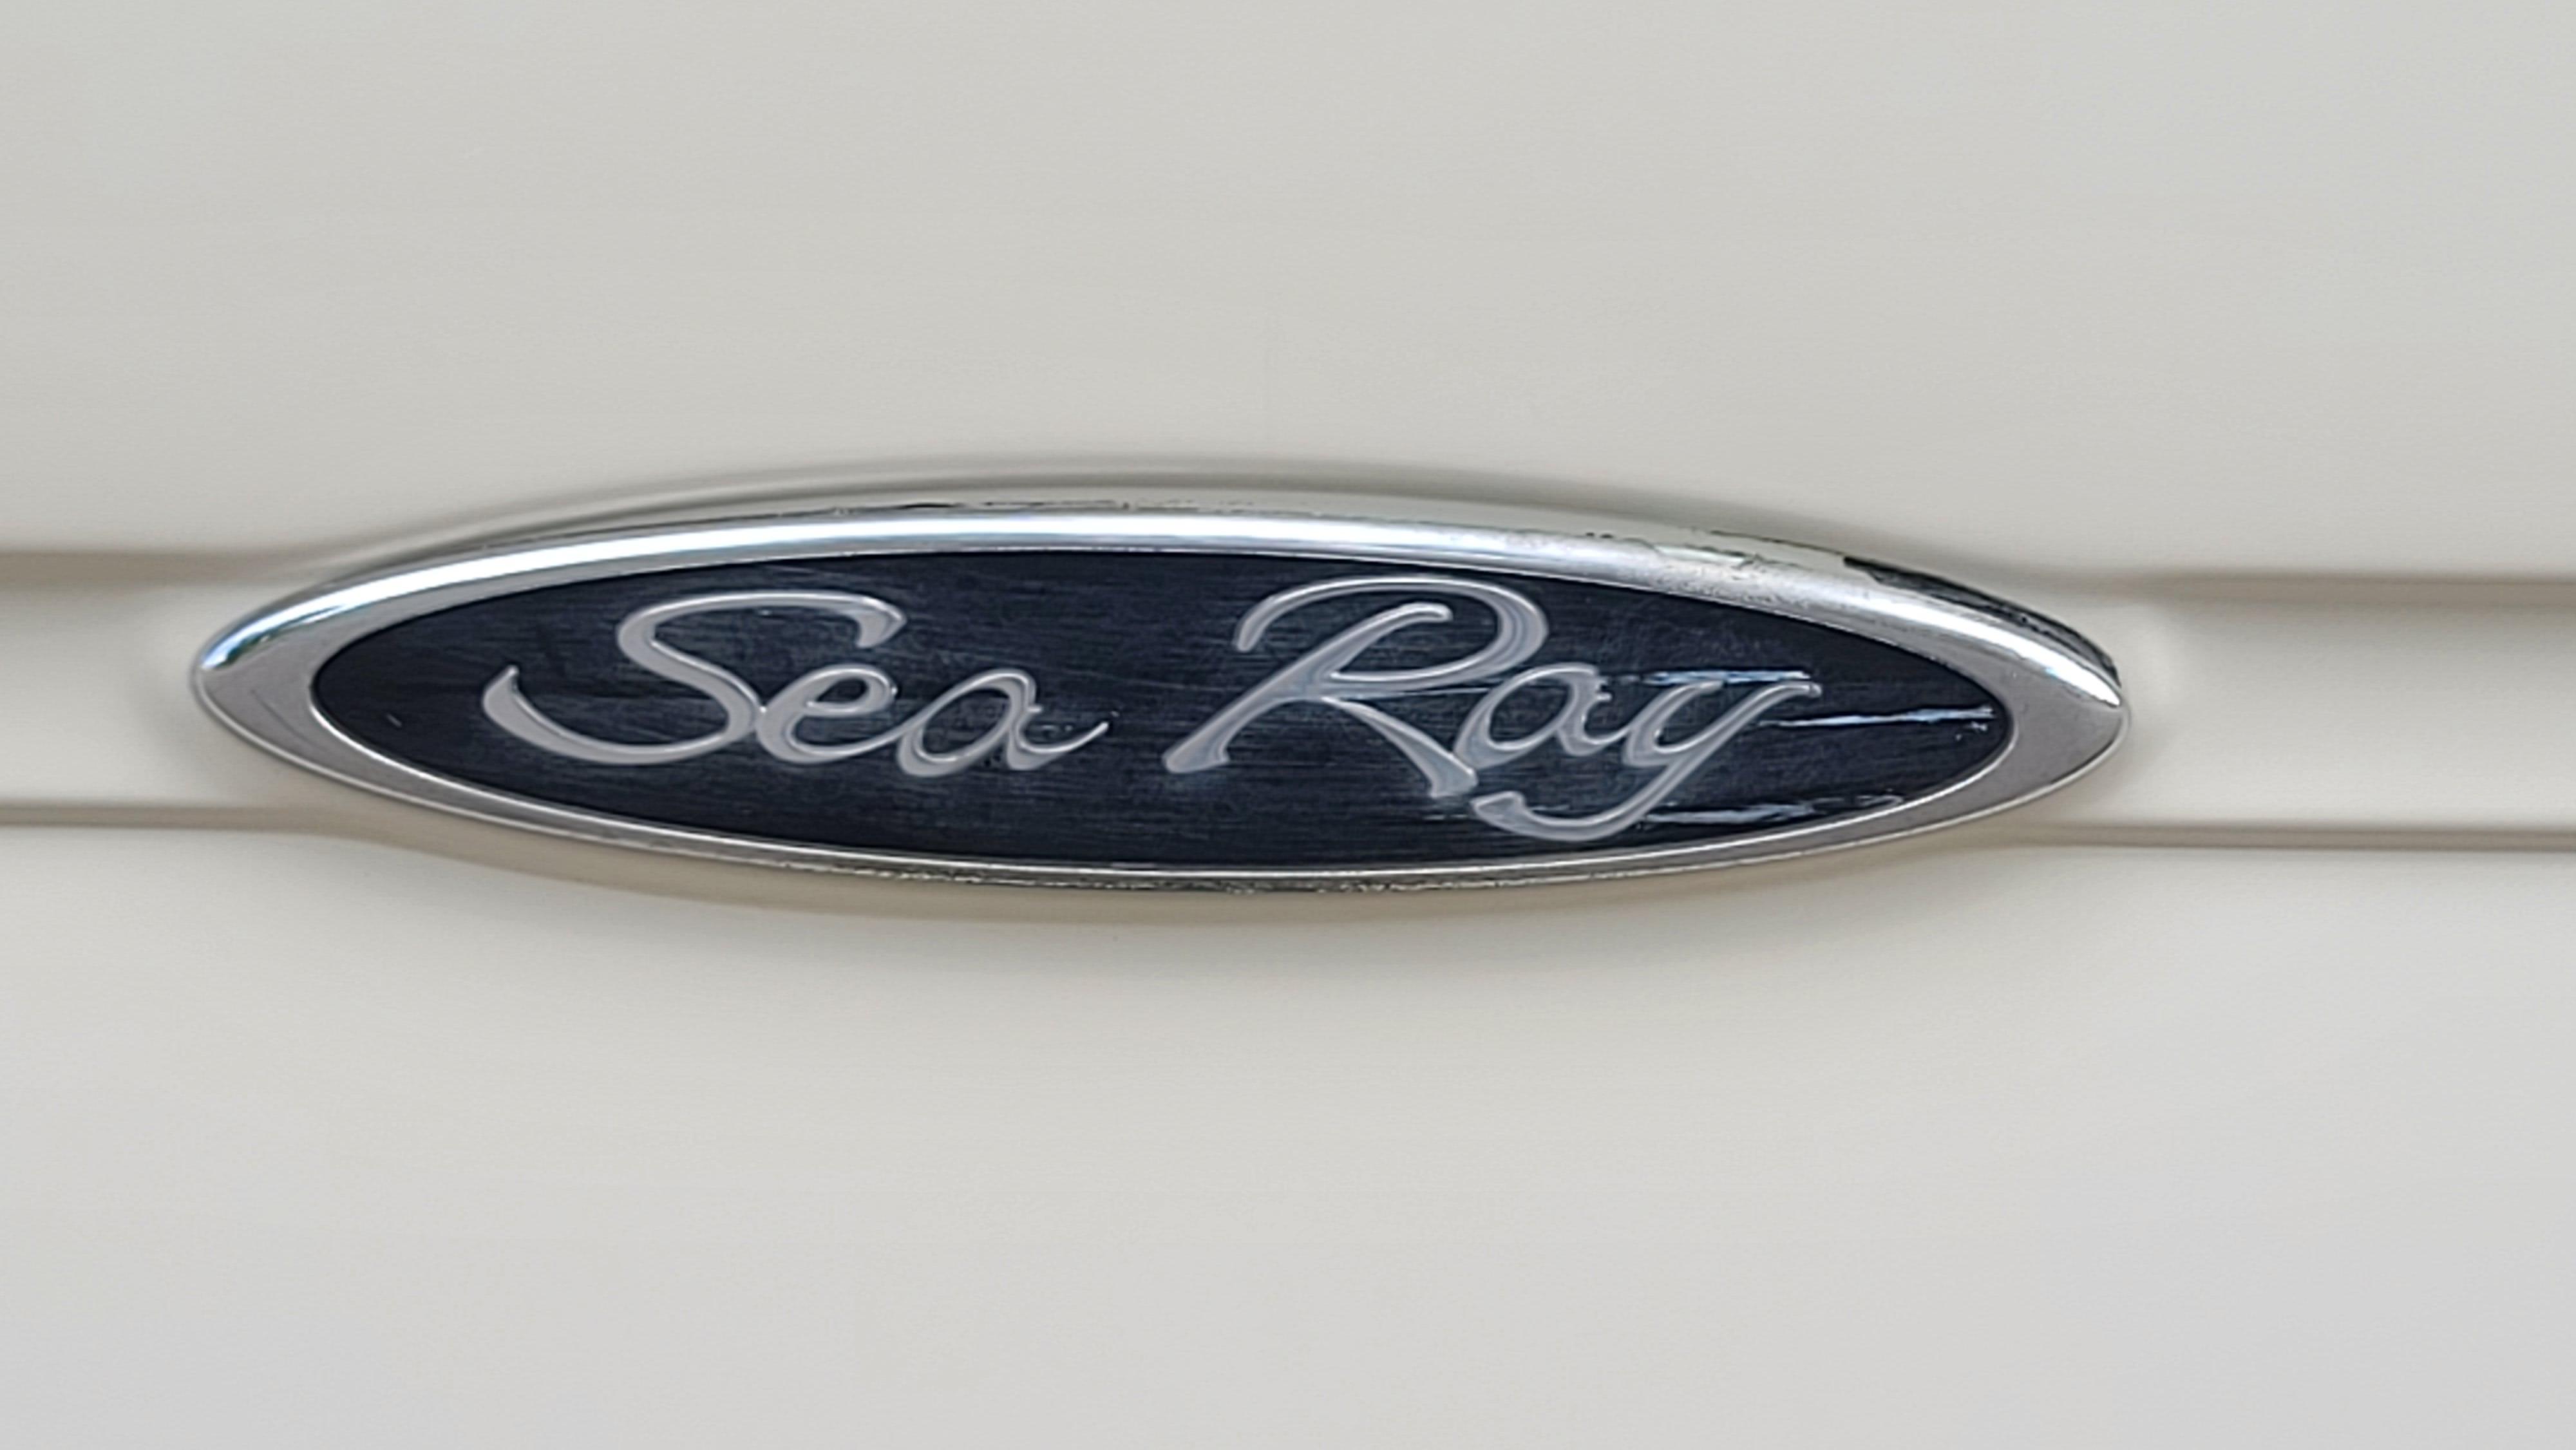 2002 Sea Ray 225 Weekender